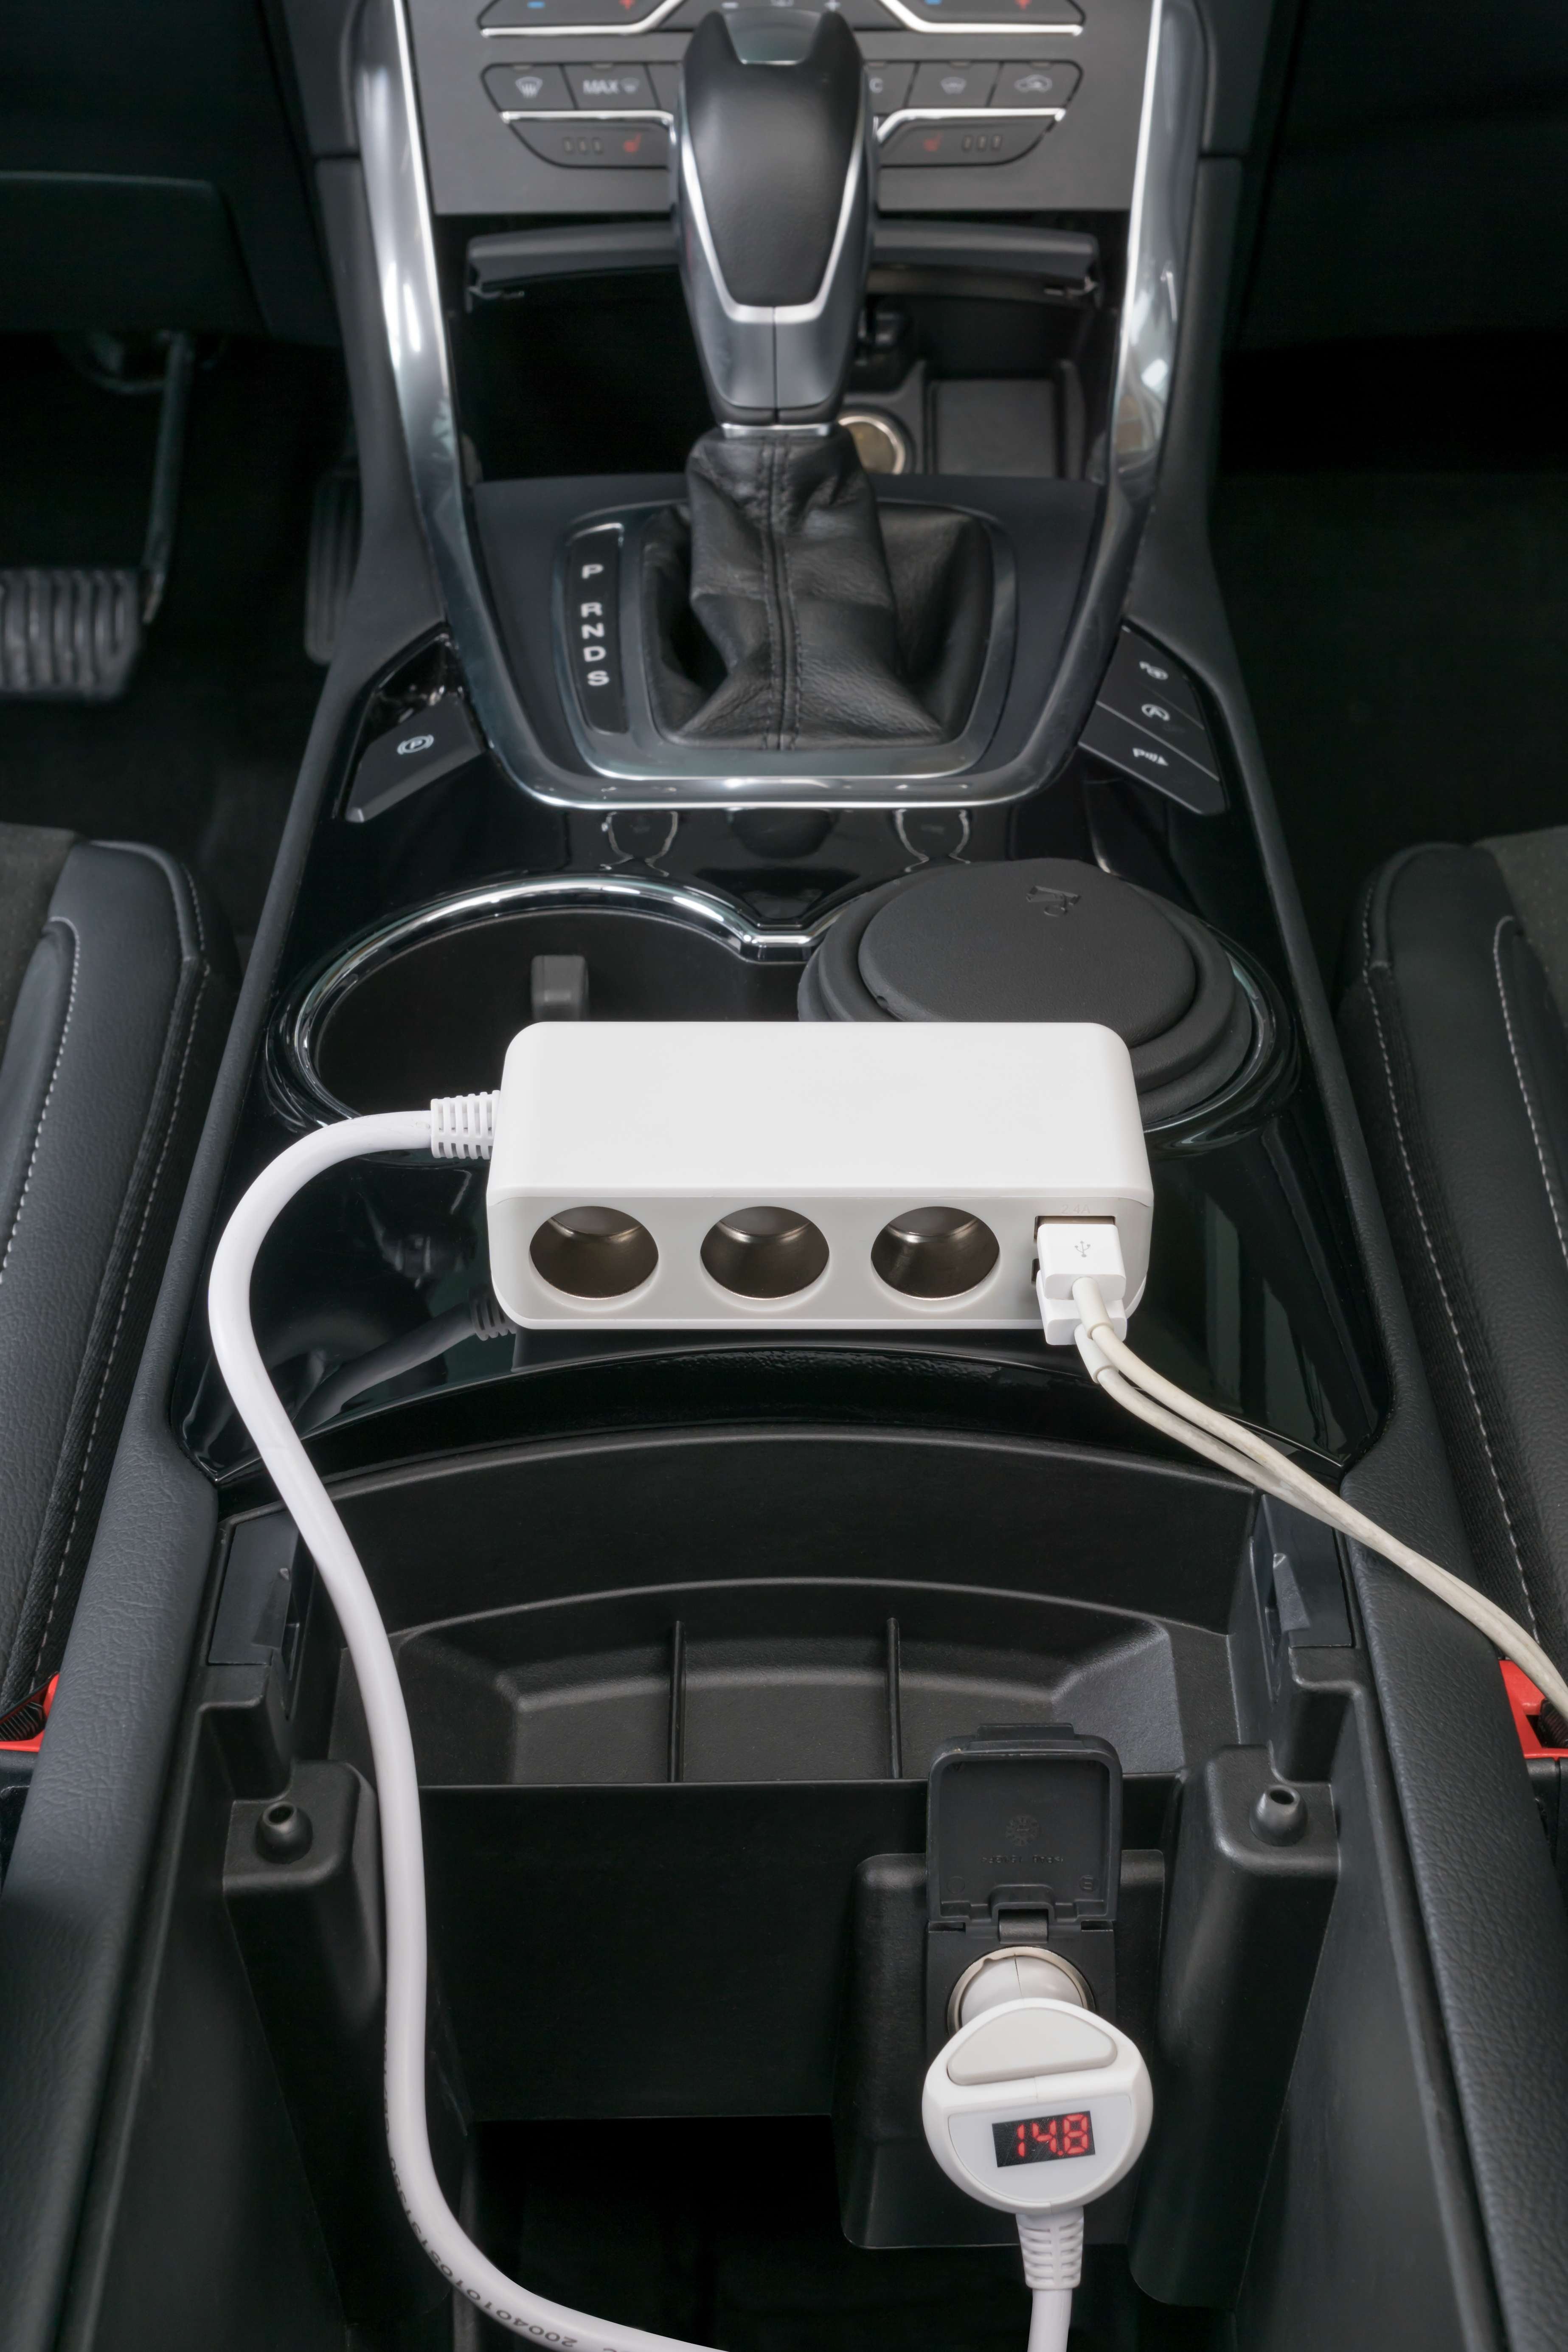 Voiture/voiture USB et chargeur de voiture DC 12/24V blanc